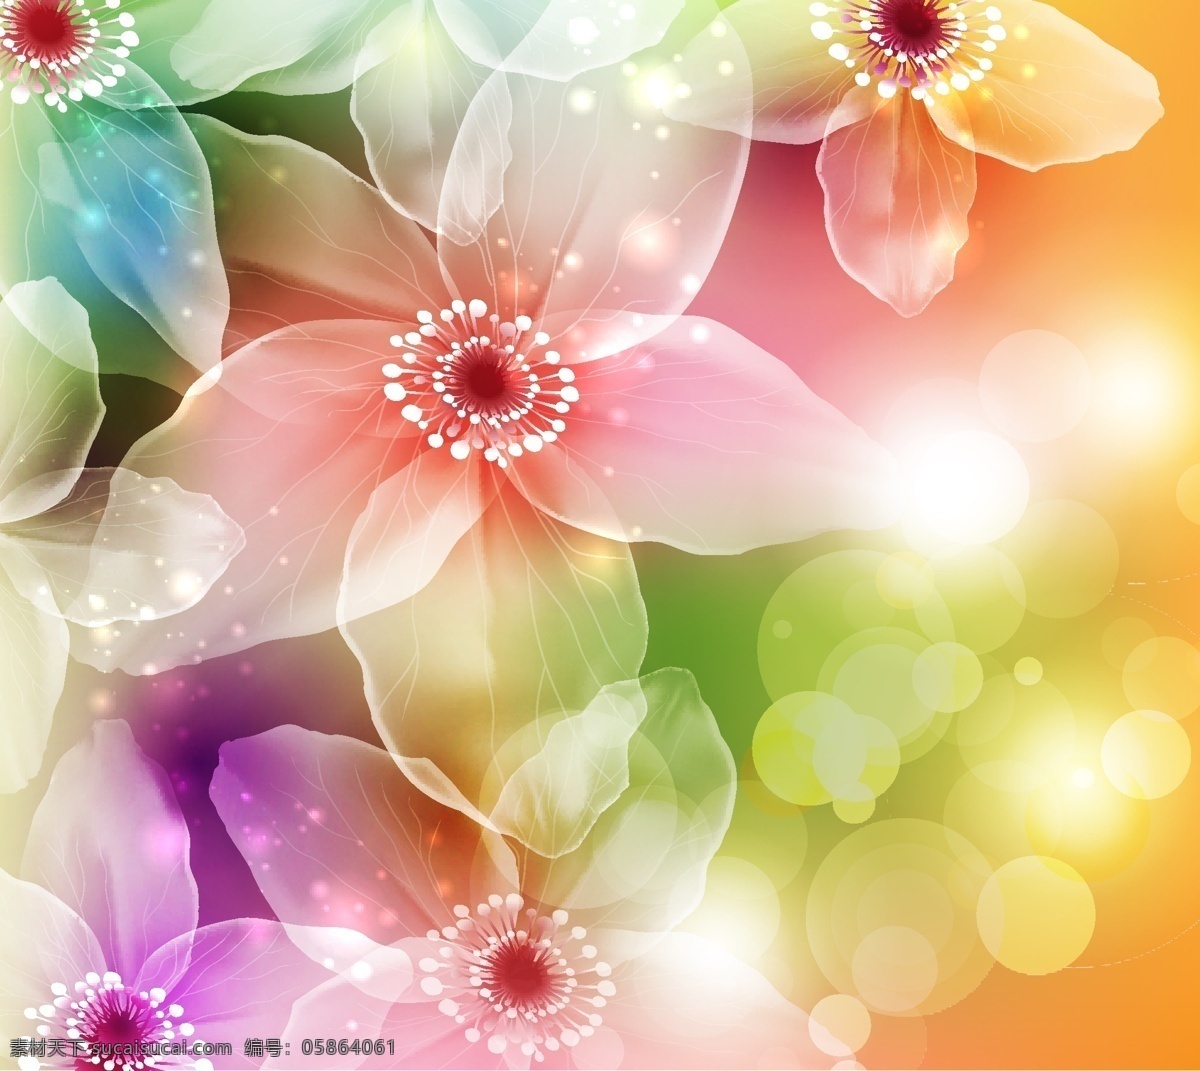 梦幻 中 美丽 花朵 矢量 淡彩光晕 洁白 透明的花朵 闪光的花卉 彩色的梦幻 光感矢量素材 底纹边框 抽象底纹